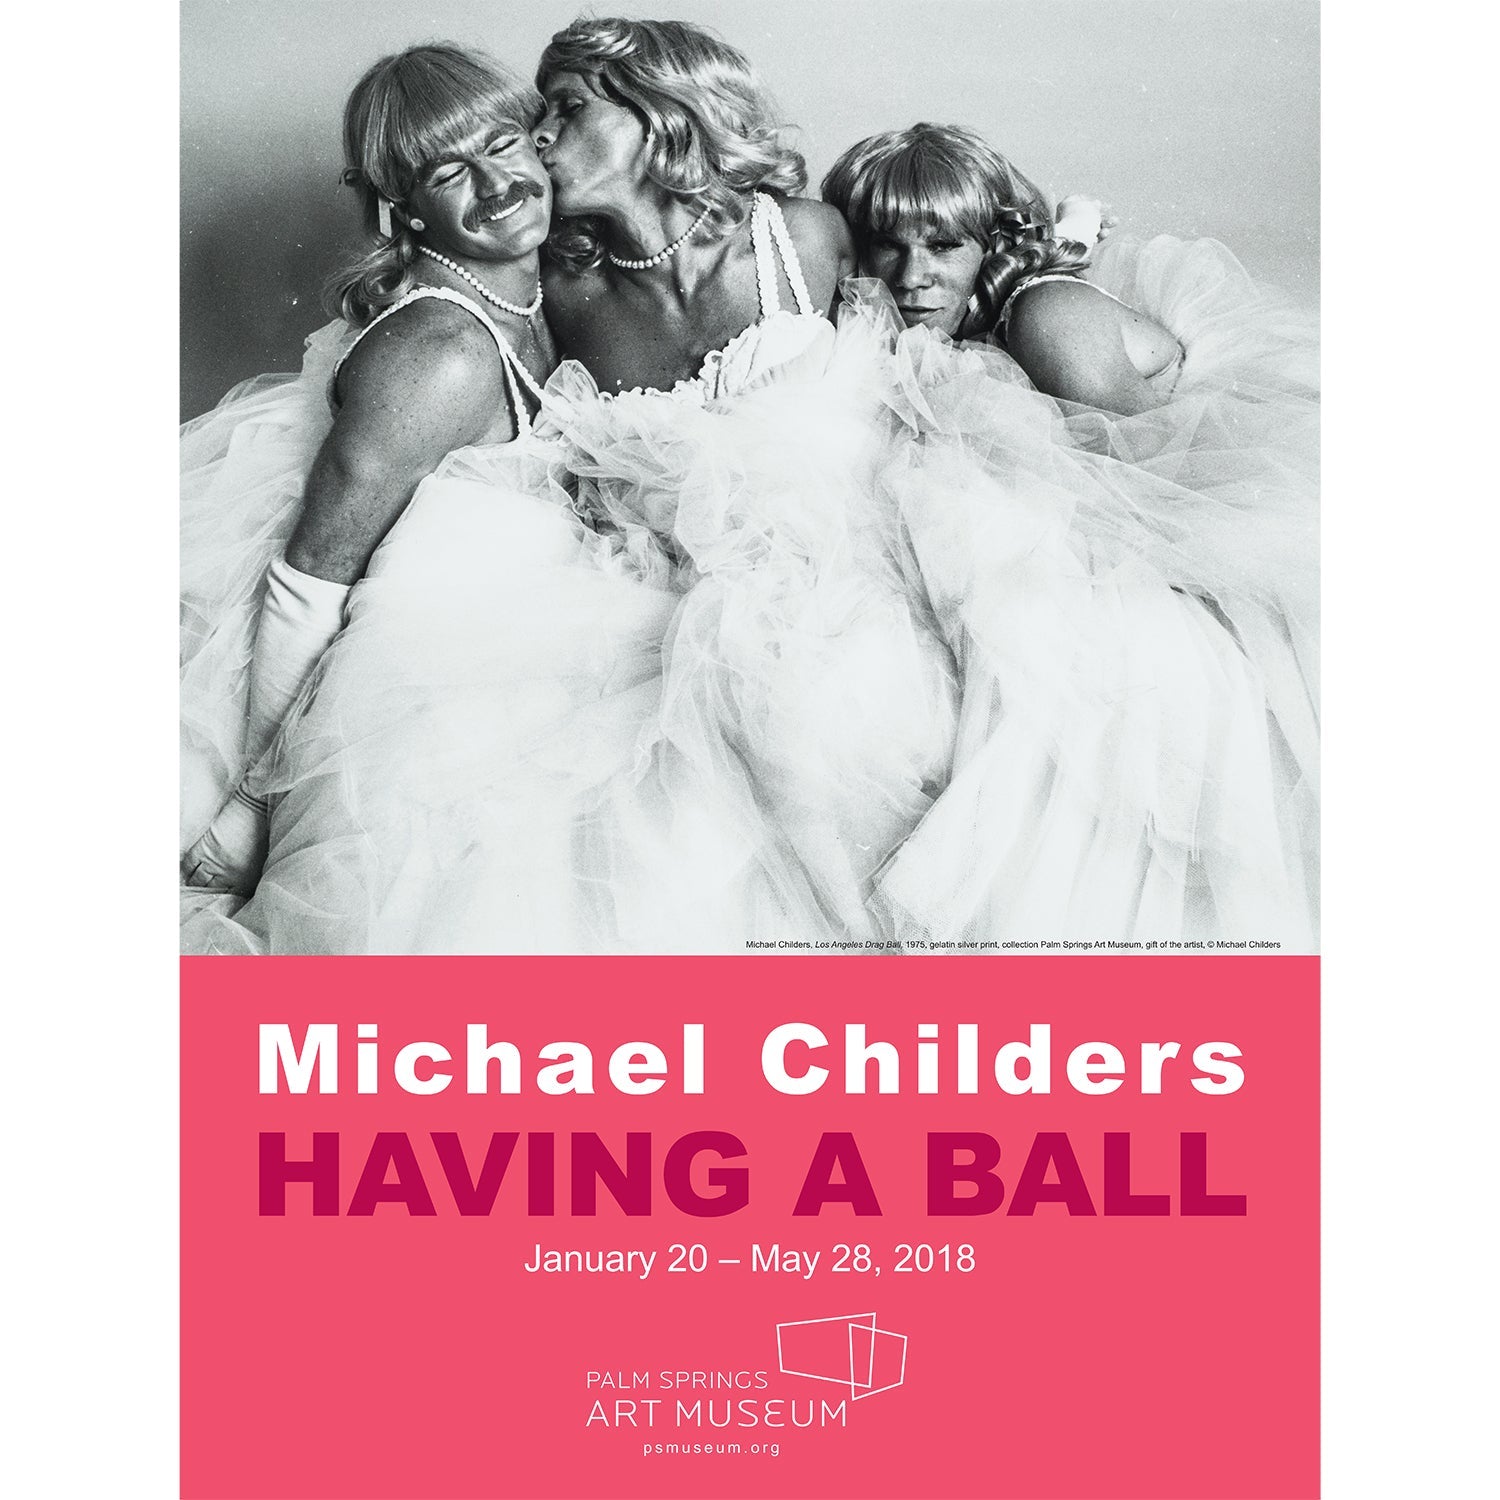 Michael Childers Having a Ball Art Museum Poster - Drag Queens - Destination PSP